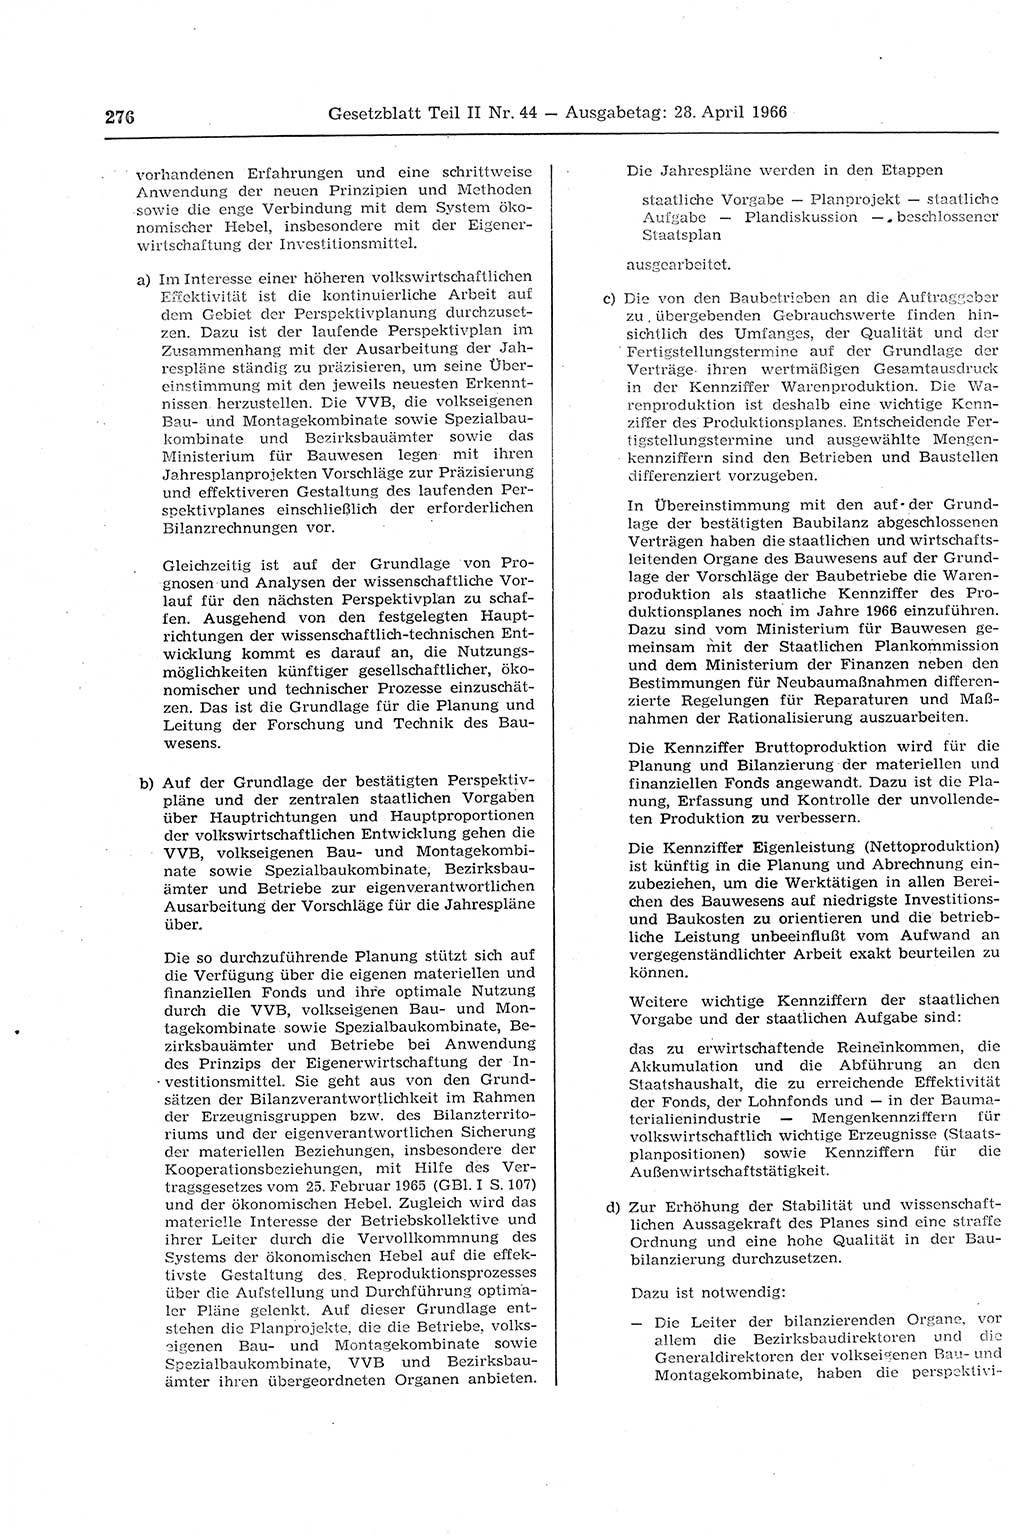 Gesetzblatt (GBl.) der Deutschen Demokratischen Republik (DDR) Teil ⅠⅠ 1966, Seite 276 (GBl. DDR ⅠⅠ 1966, S. 276)